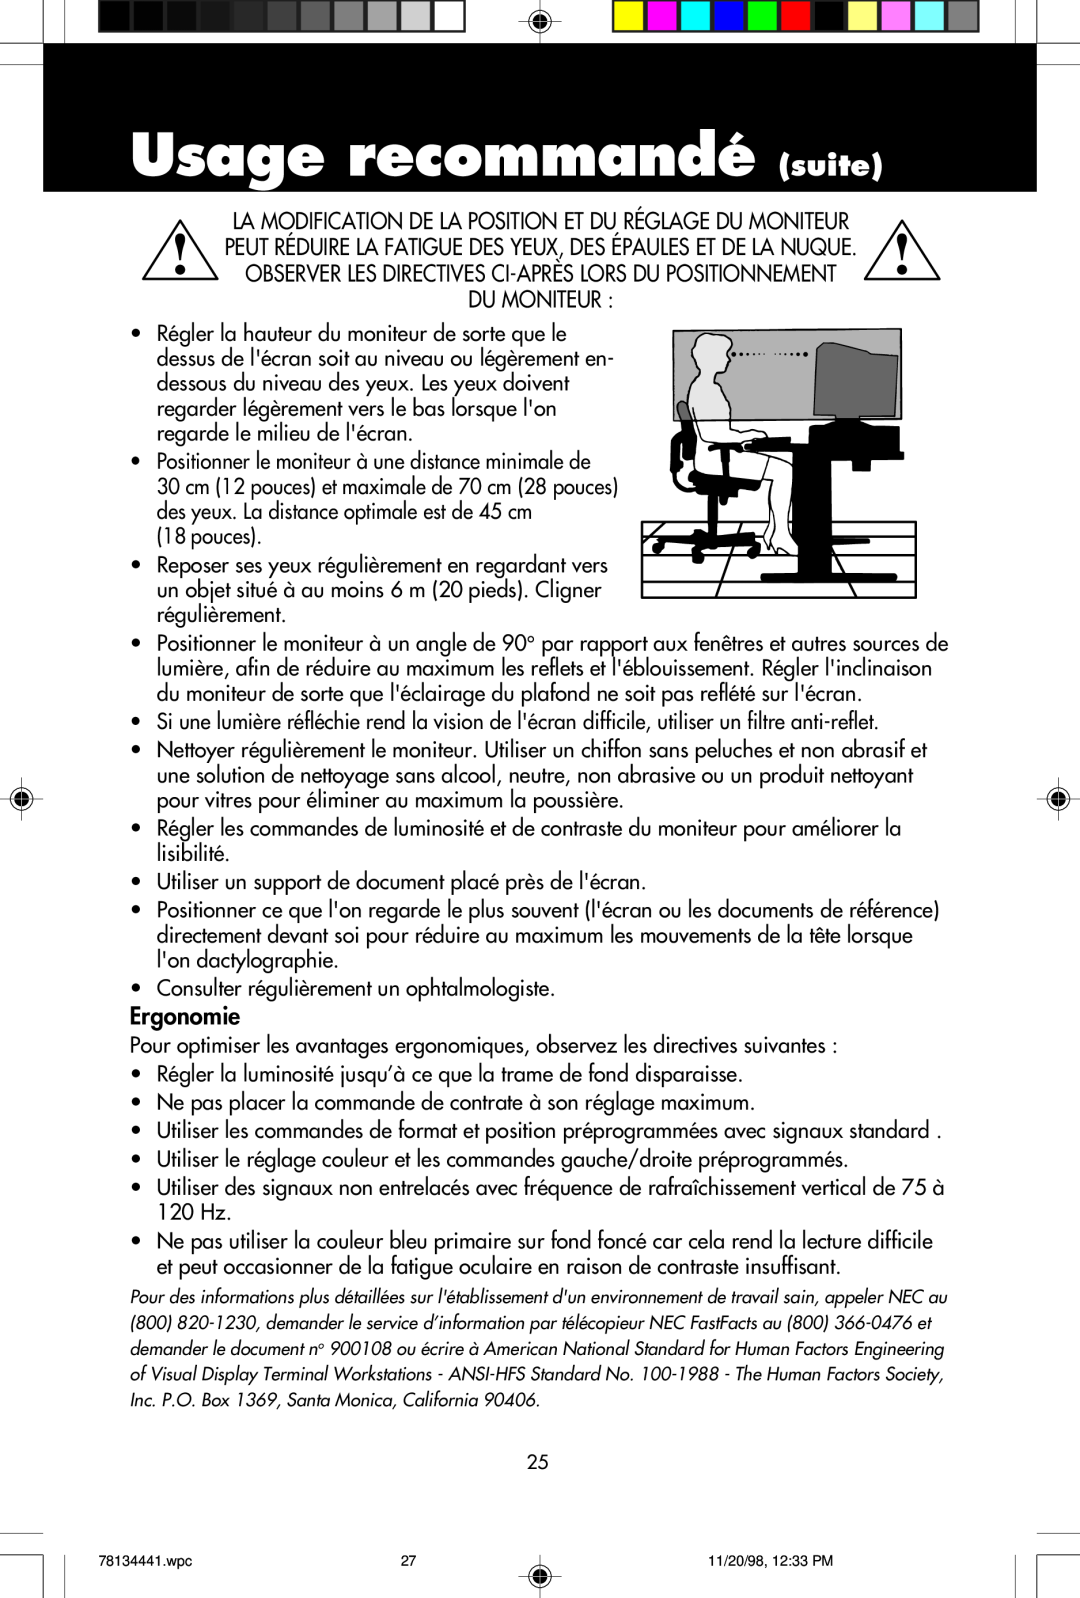 NEC A700+TM Usage recommandé suite, Observer Les Directives Ci-Après Lors Du Positionnement Du Moniteur, Ergonomie 